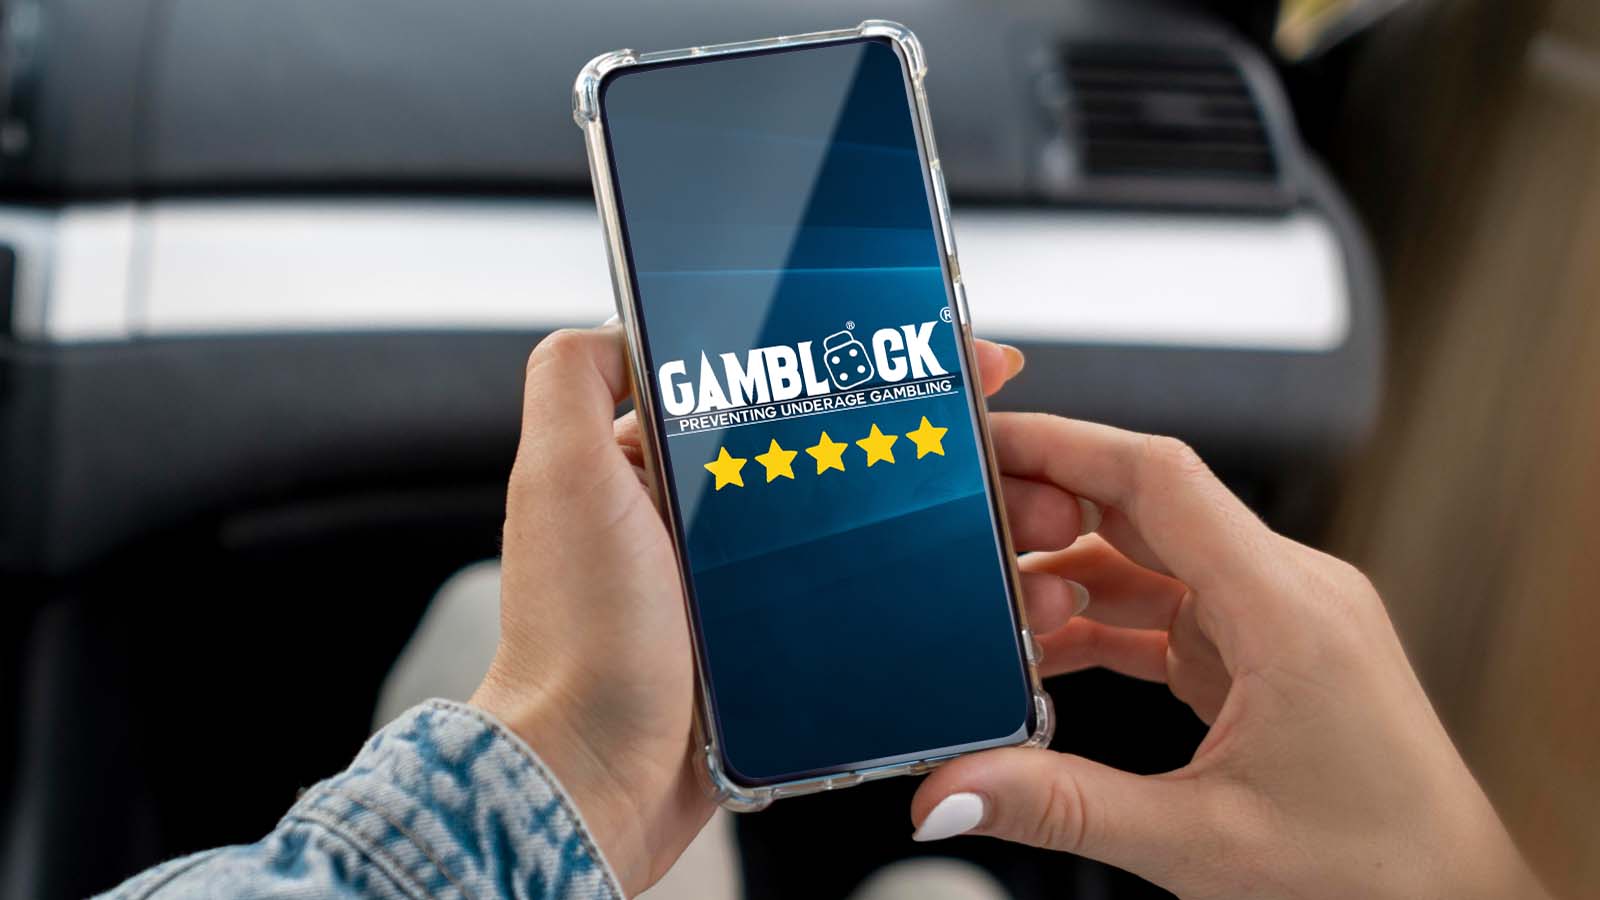 Mobile Gamblock review